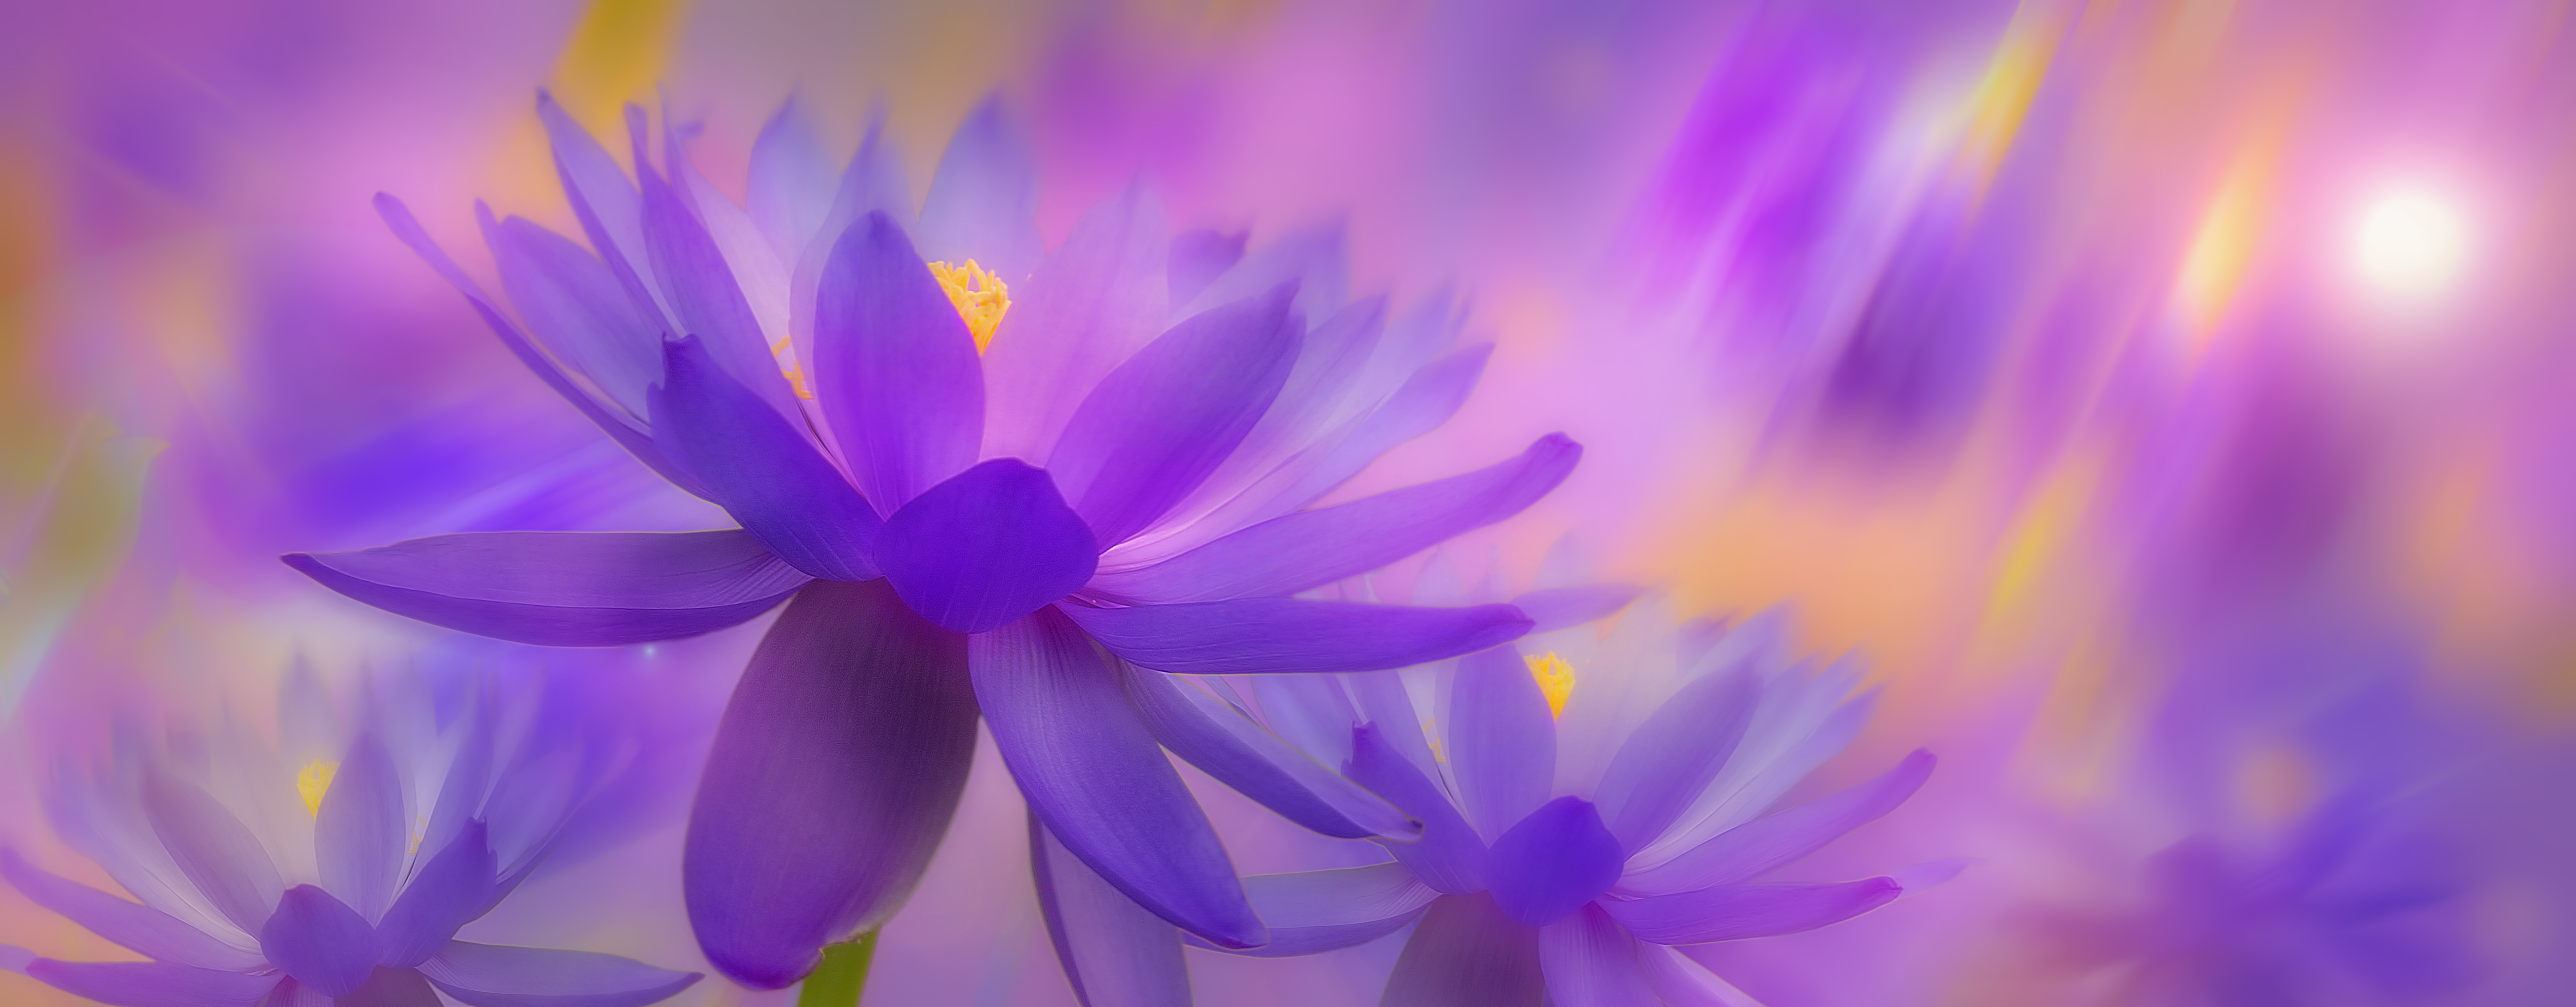 Фото бесплатно панорама, цветы, цветочная композиция